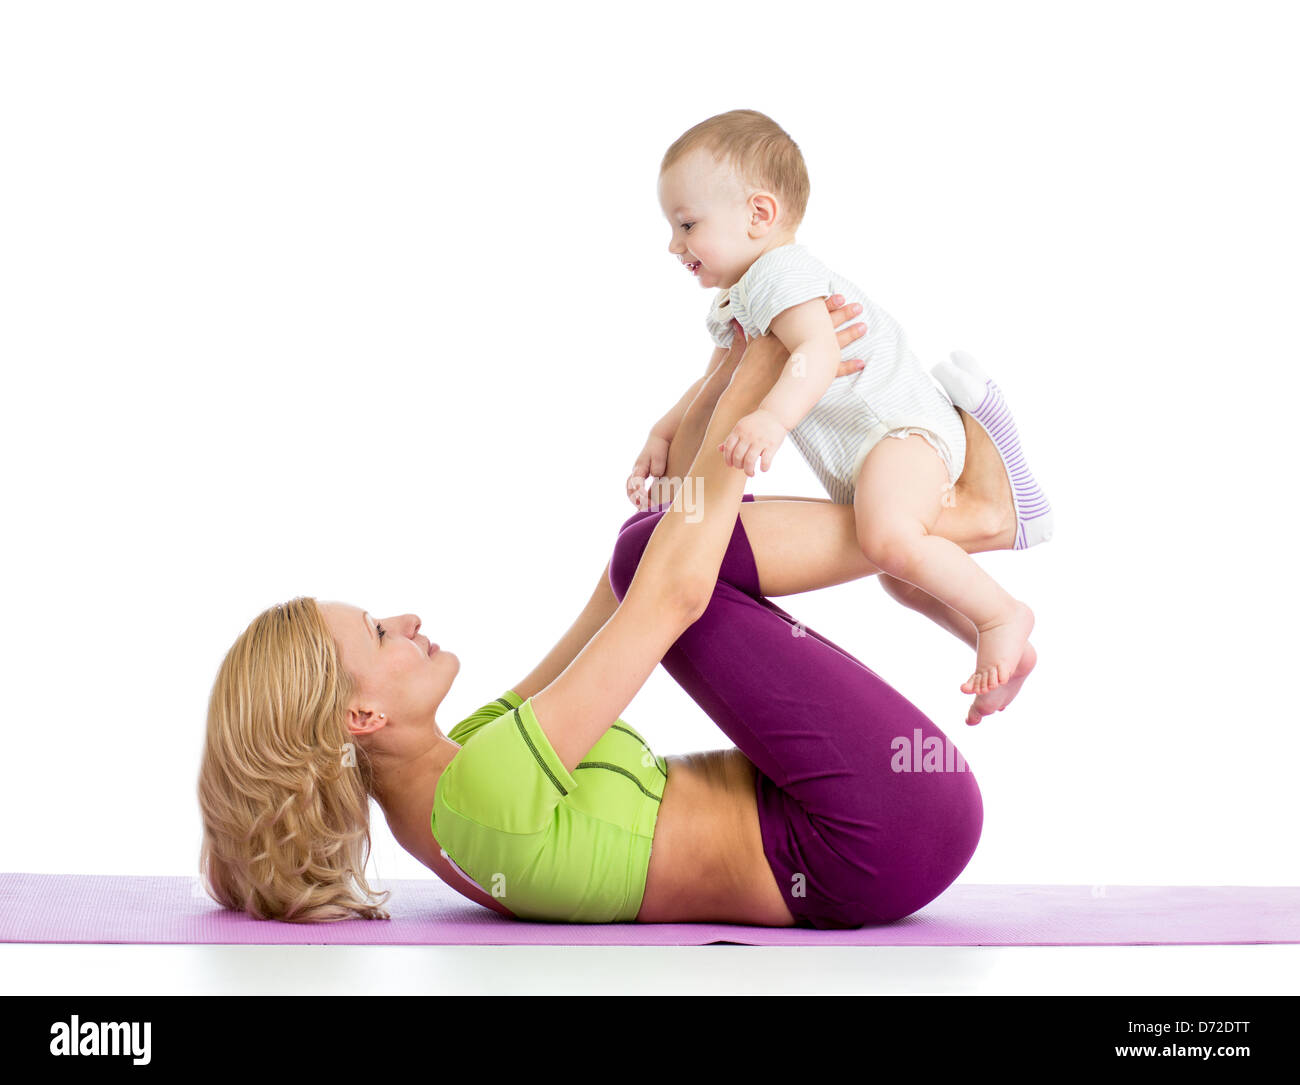 La madre con el bebé haciendo gimnasia y ejercicios físicos Foto de stock